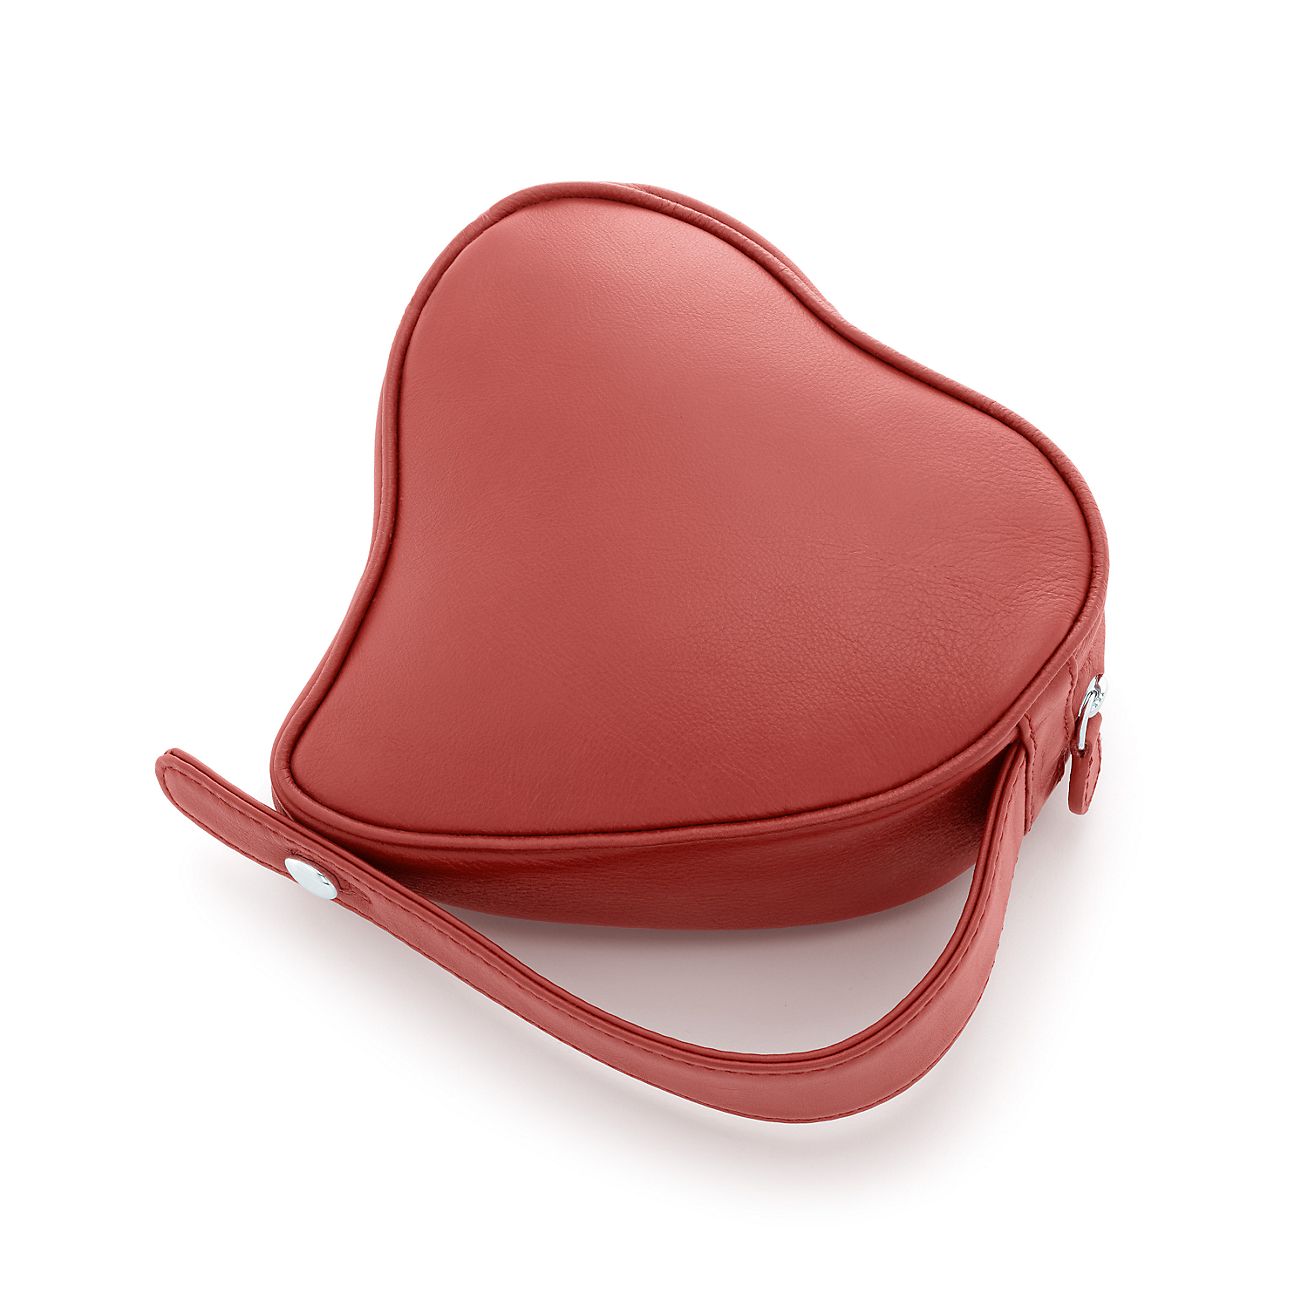 heart clutch bag